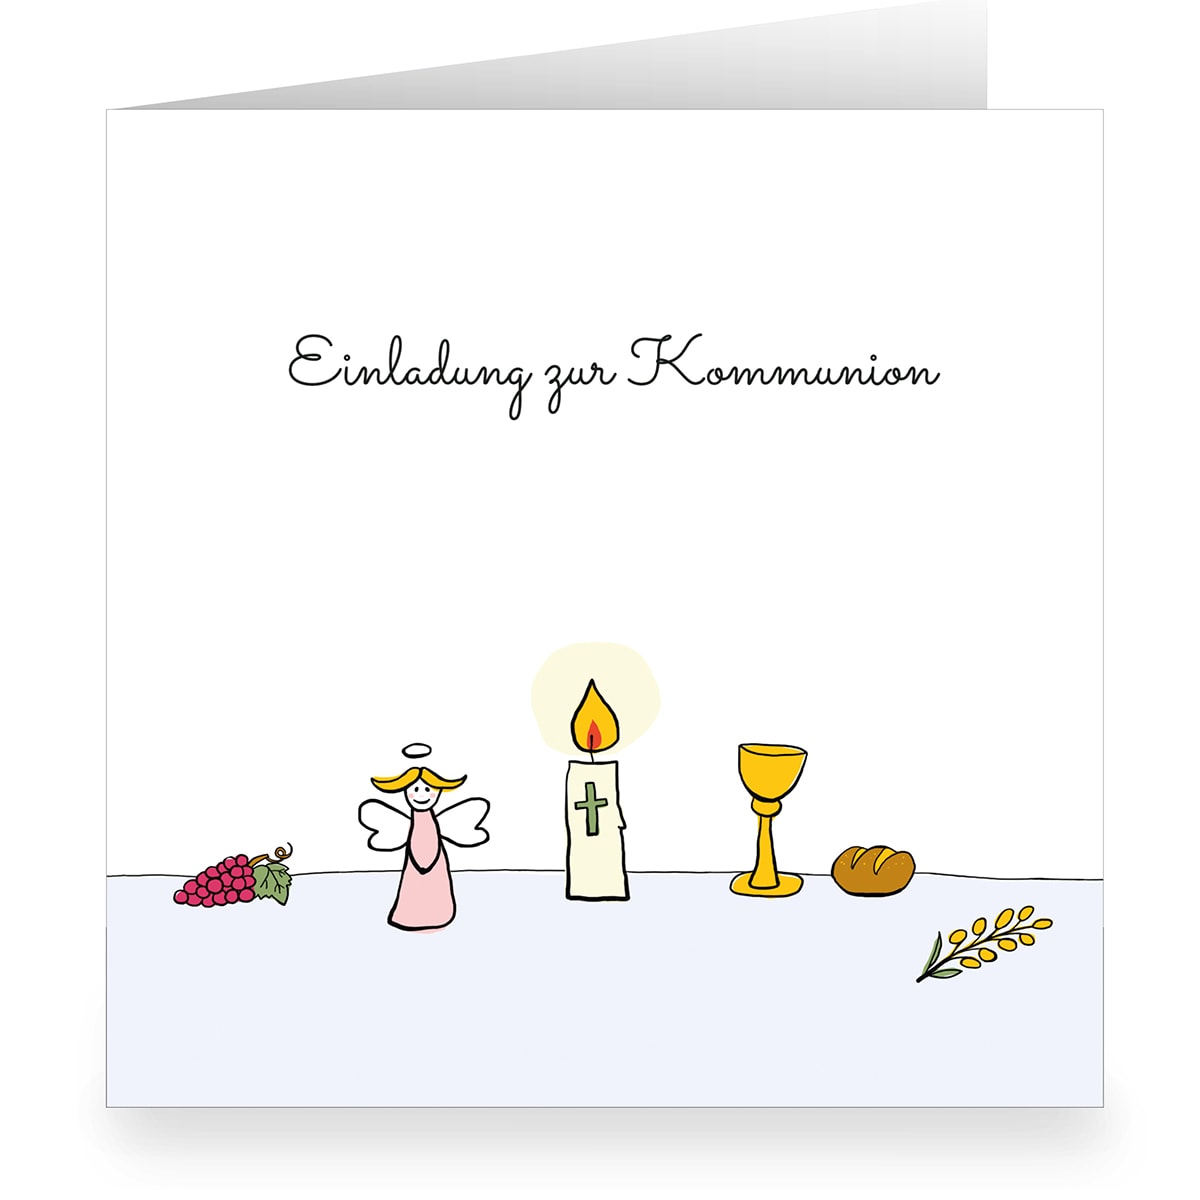 Kartenkaufrausch: Schöne Engel Kommunions Einladungskarte aus unserer Einladung Papeterie in weiß